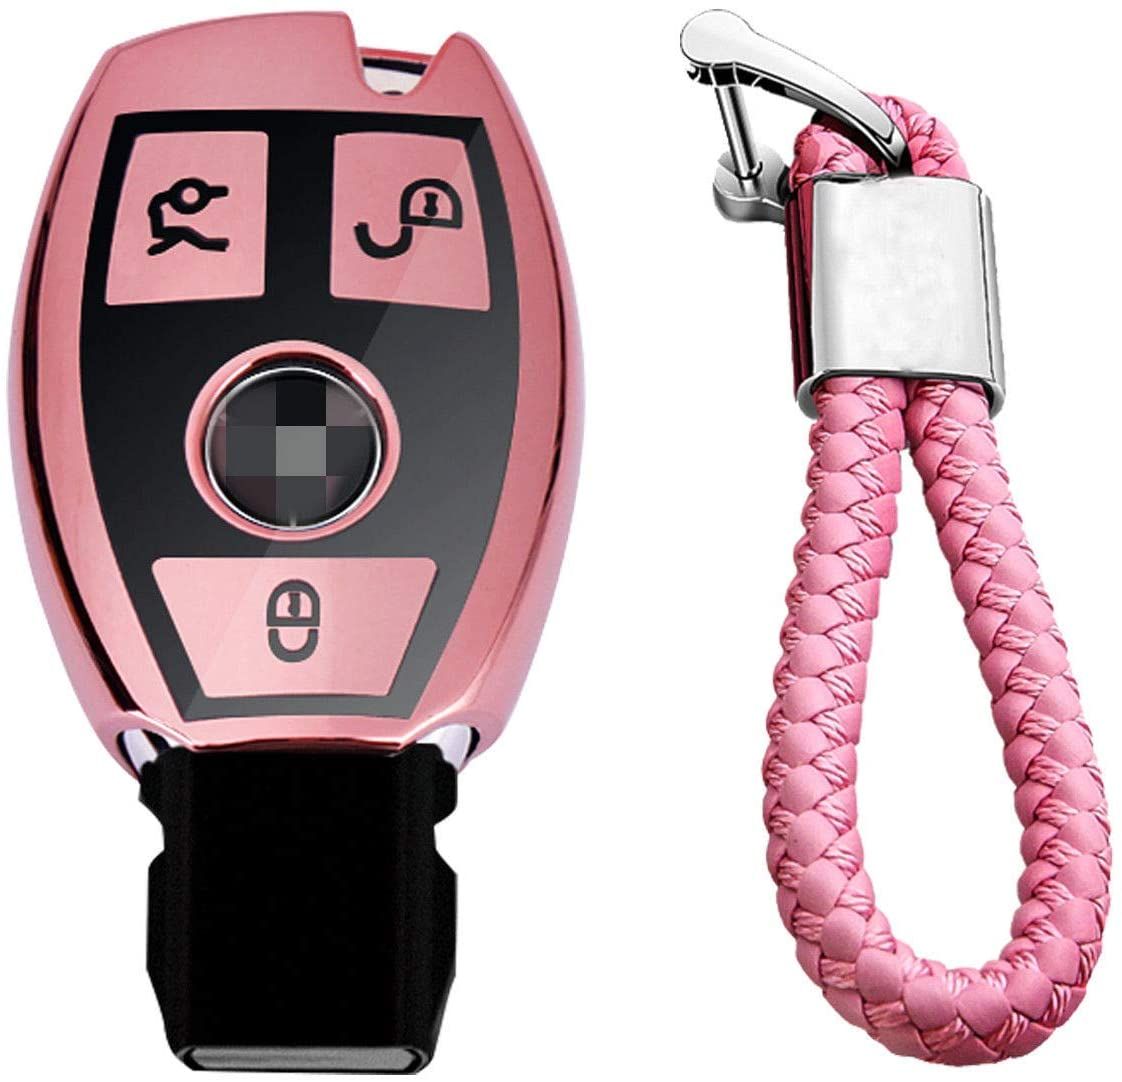 Glossy Pink - geflochtene Schlüsselbund